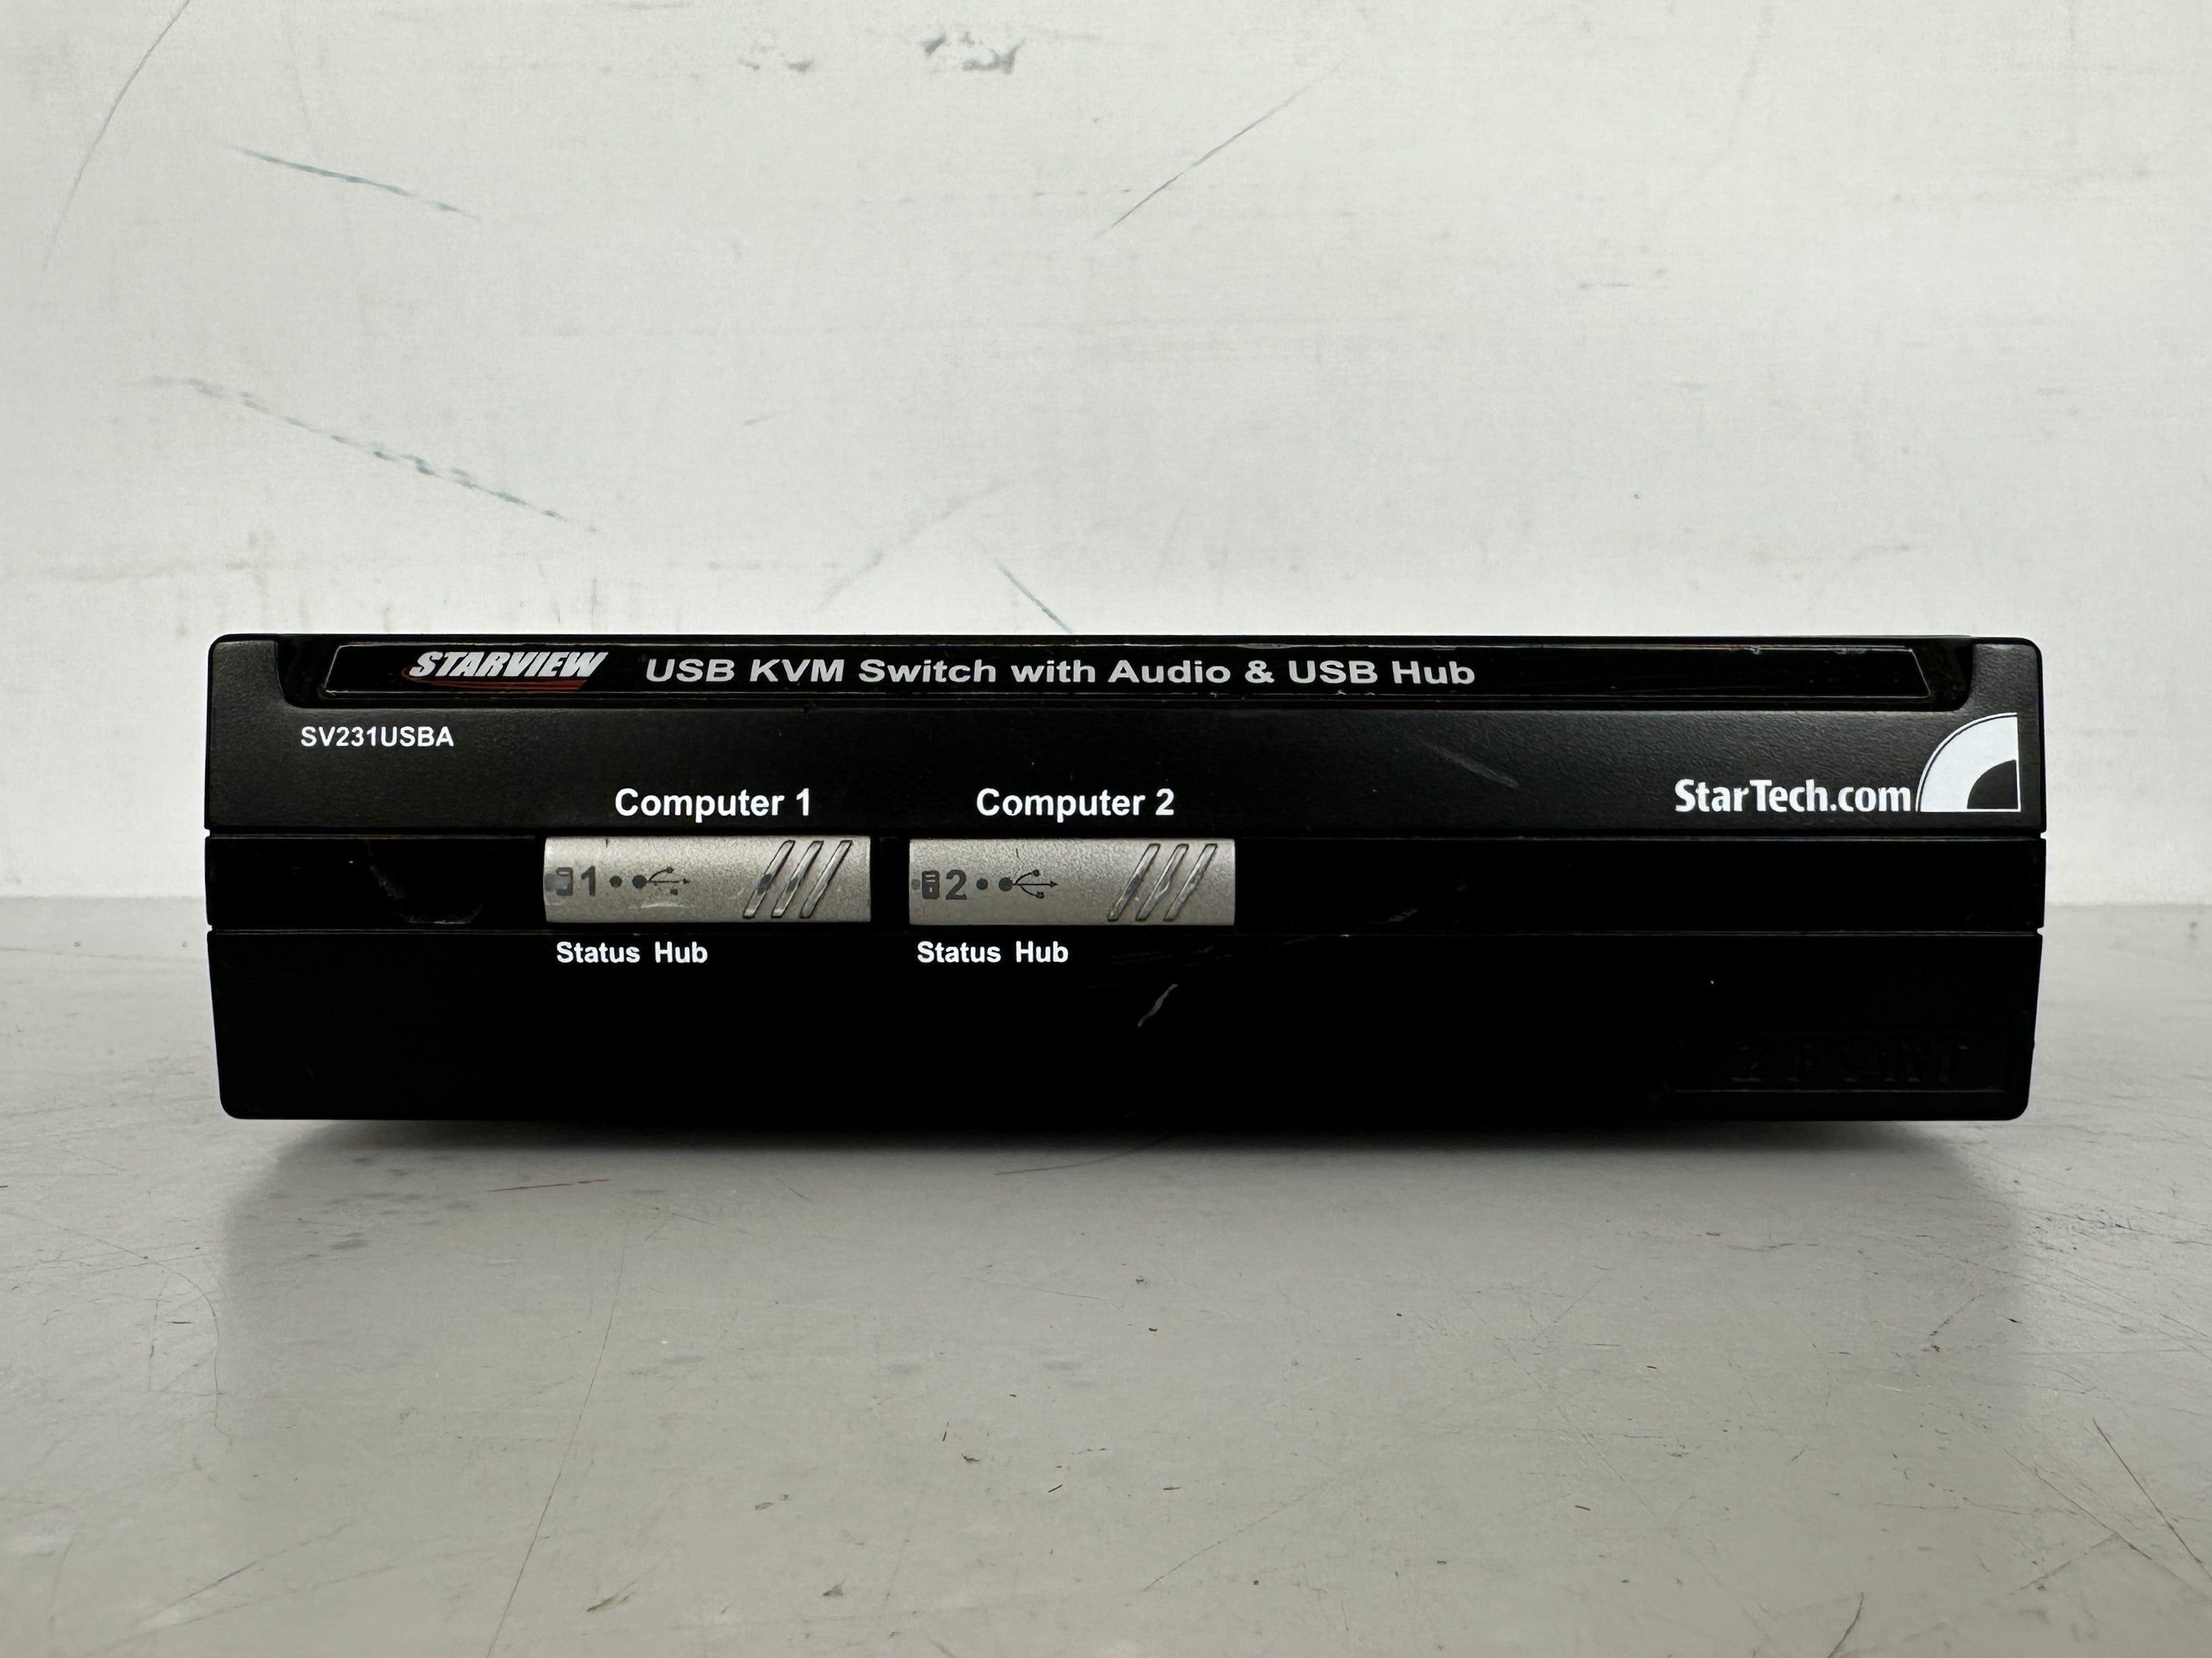 Starview SV231USBA 2-Port USB Switch w/ Audio & USB Hub